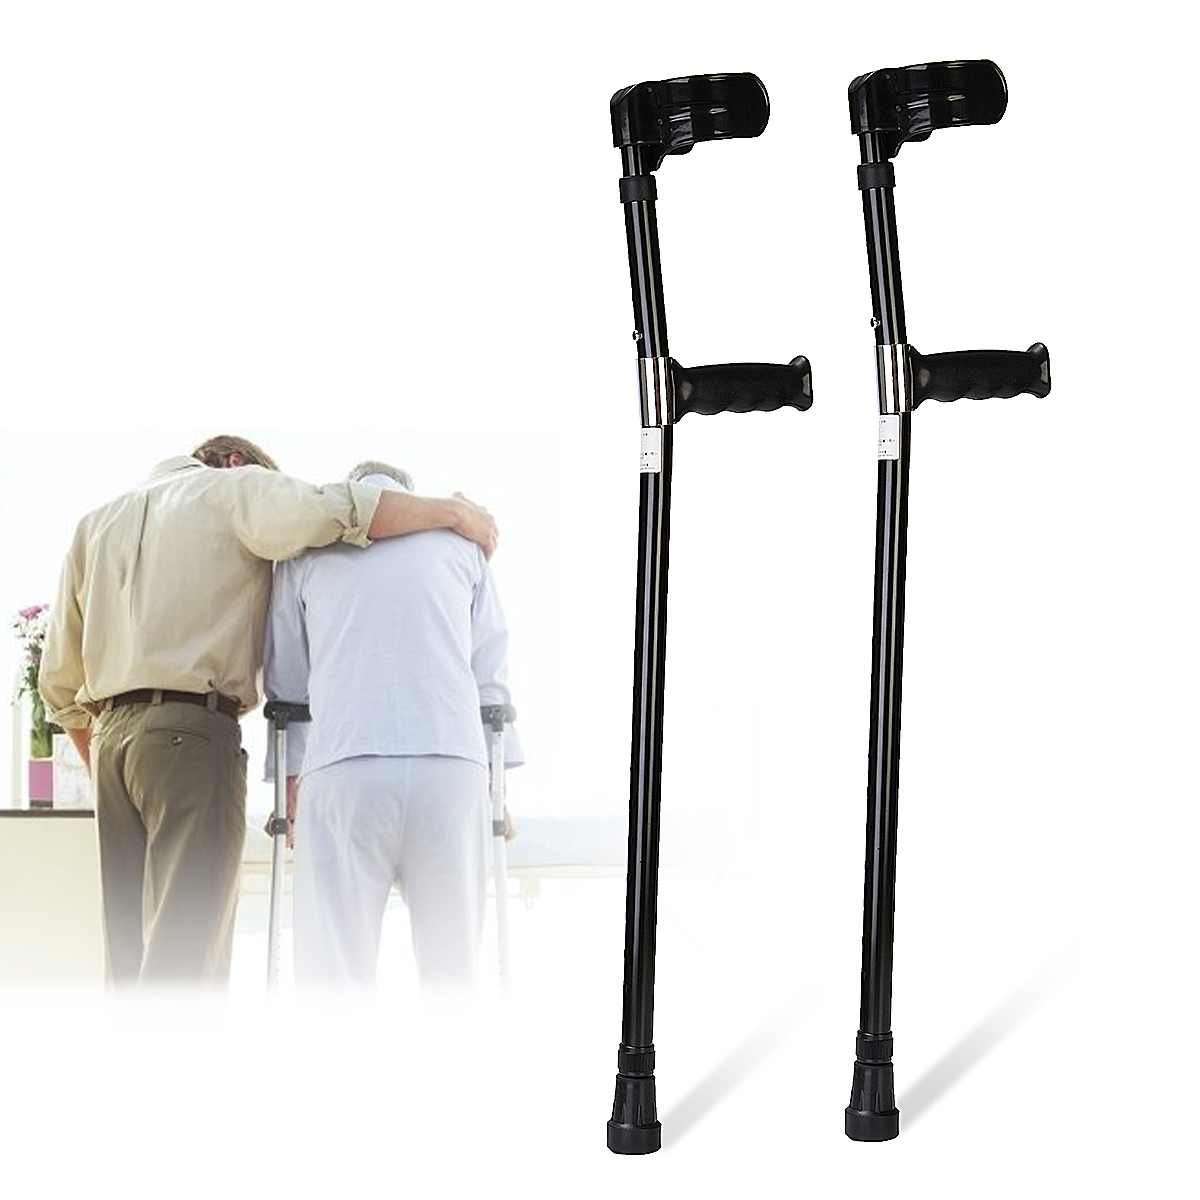 A-Pair-of-Adjustable-Aluminum-Alloy-Armpit-Crutches-Forearm-Crutches-Elbow-Crutches-Climbing-Sticks-1645522-2